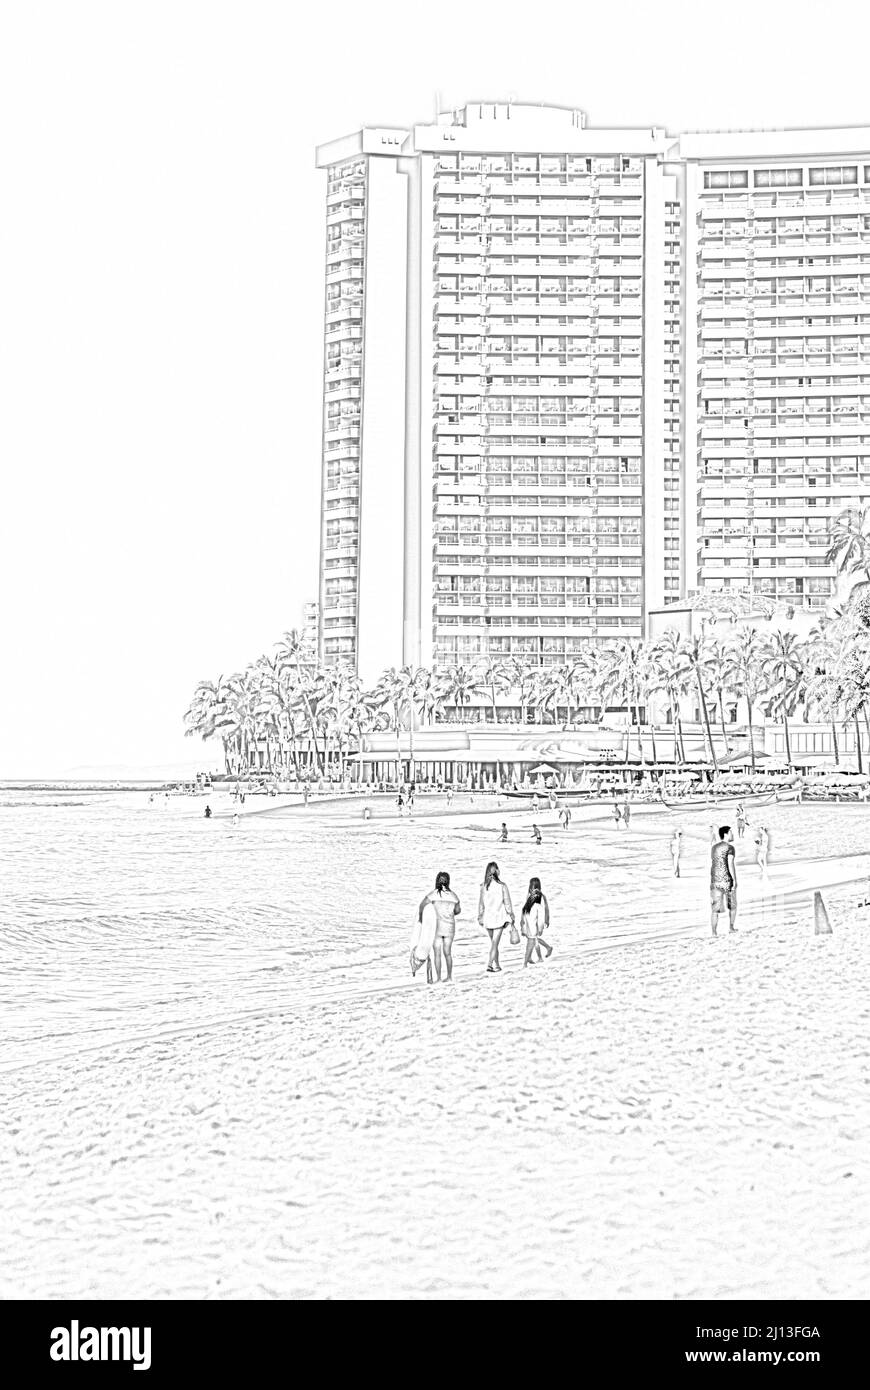 Honolulu, Hawaii - May 02, 2015: Pencil drawing of tourist enjoying world famous Waikiki Beach, Waikiki Beach Stock Photo